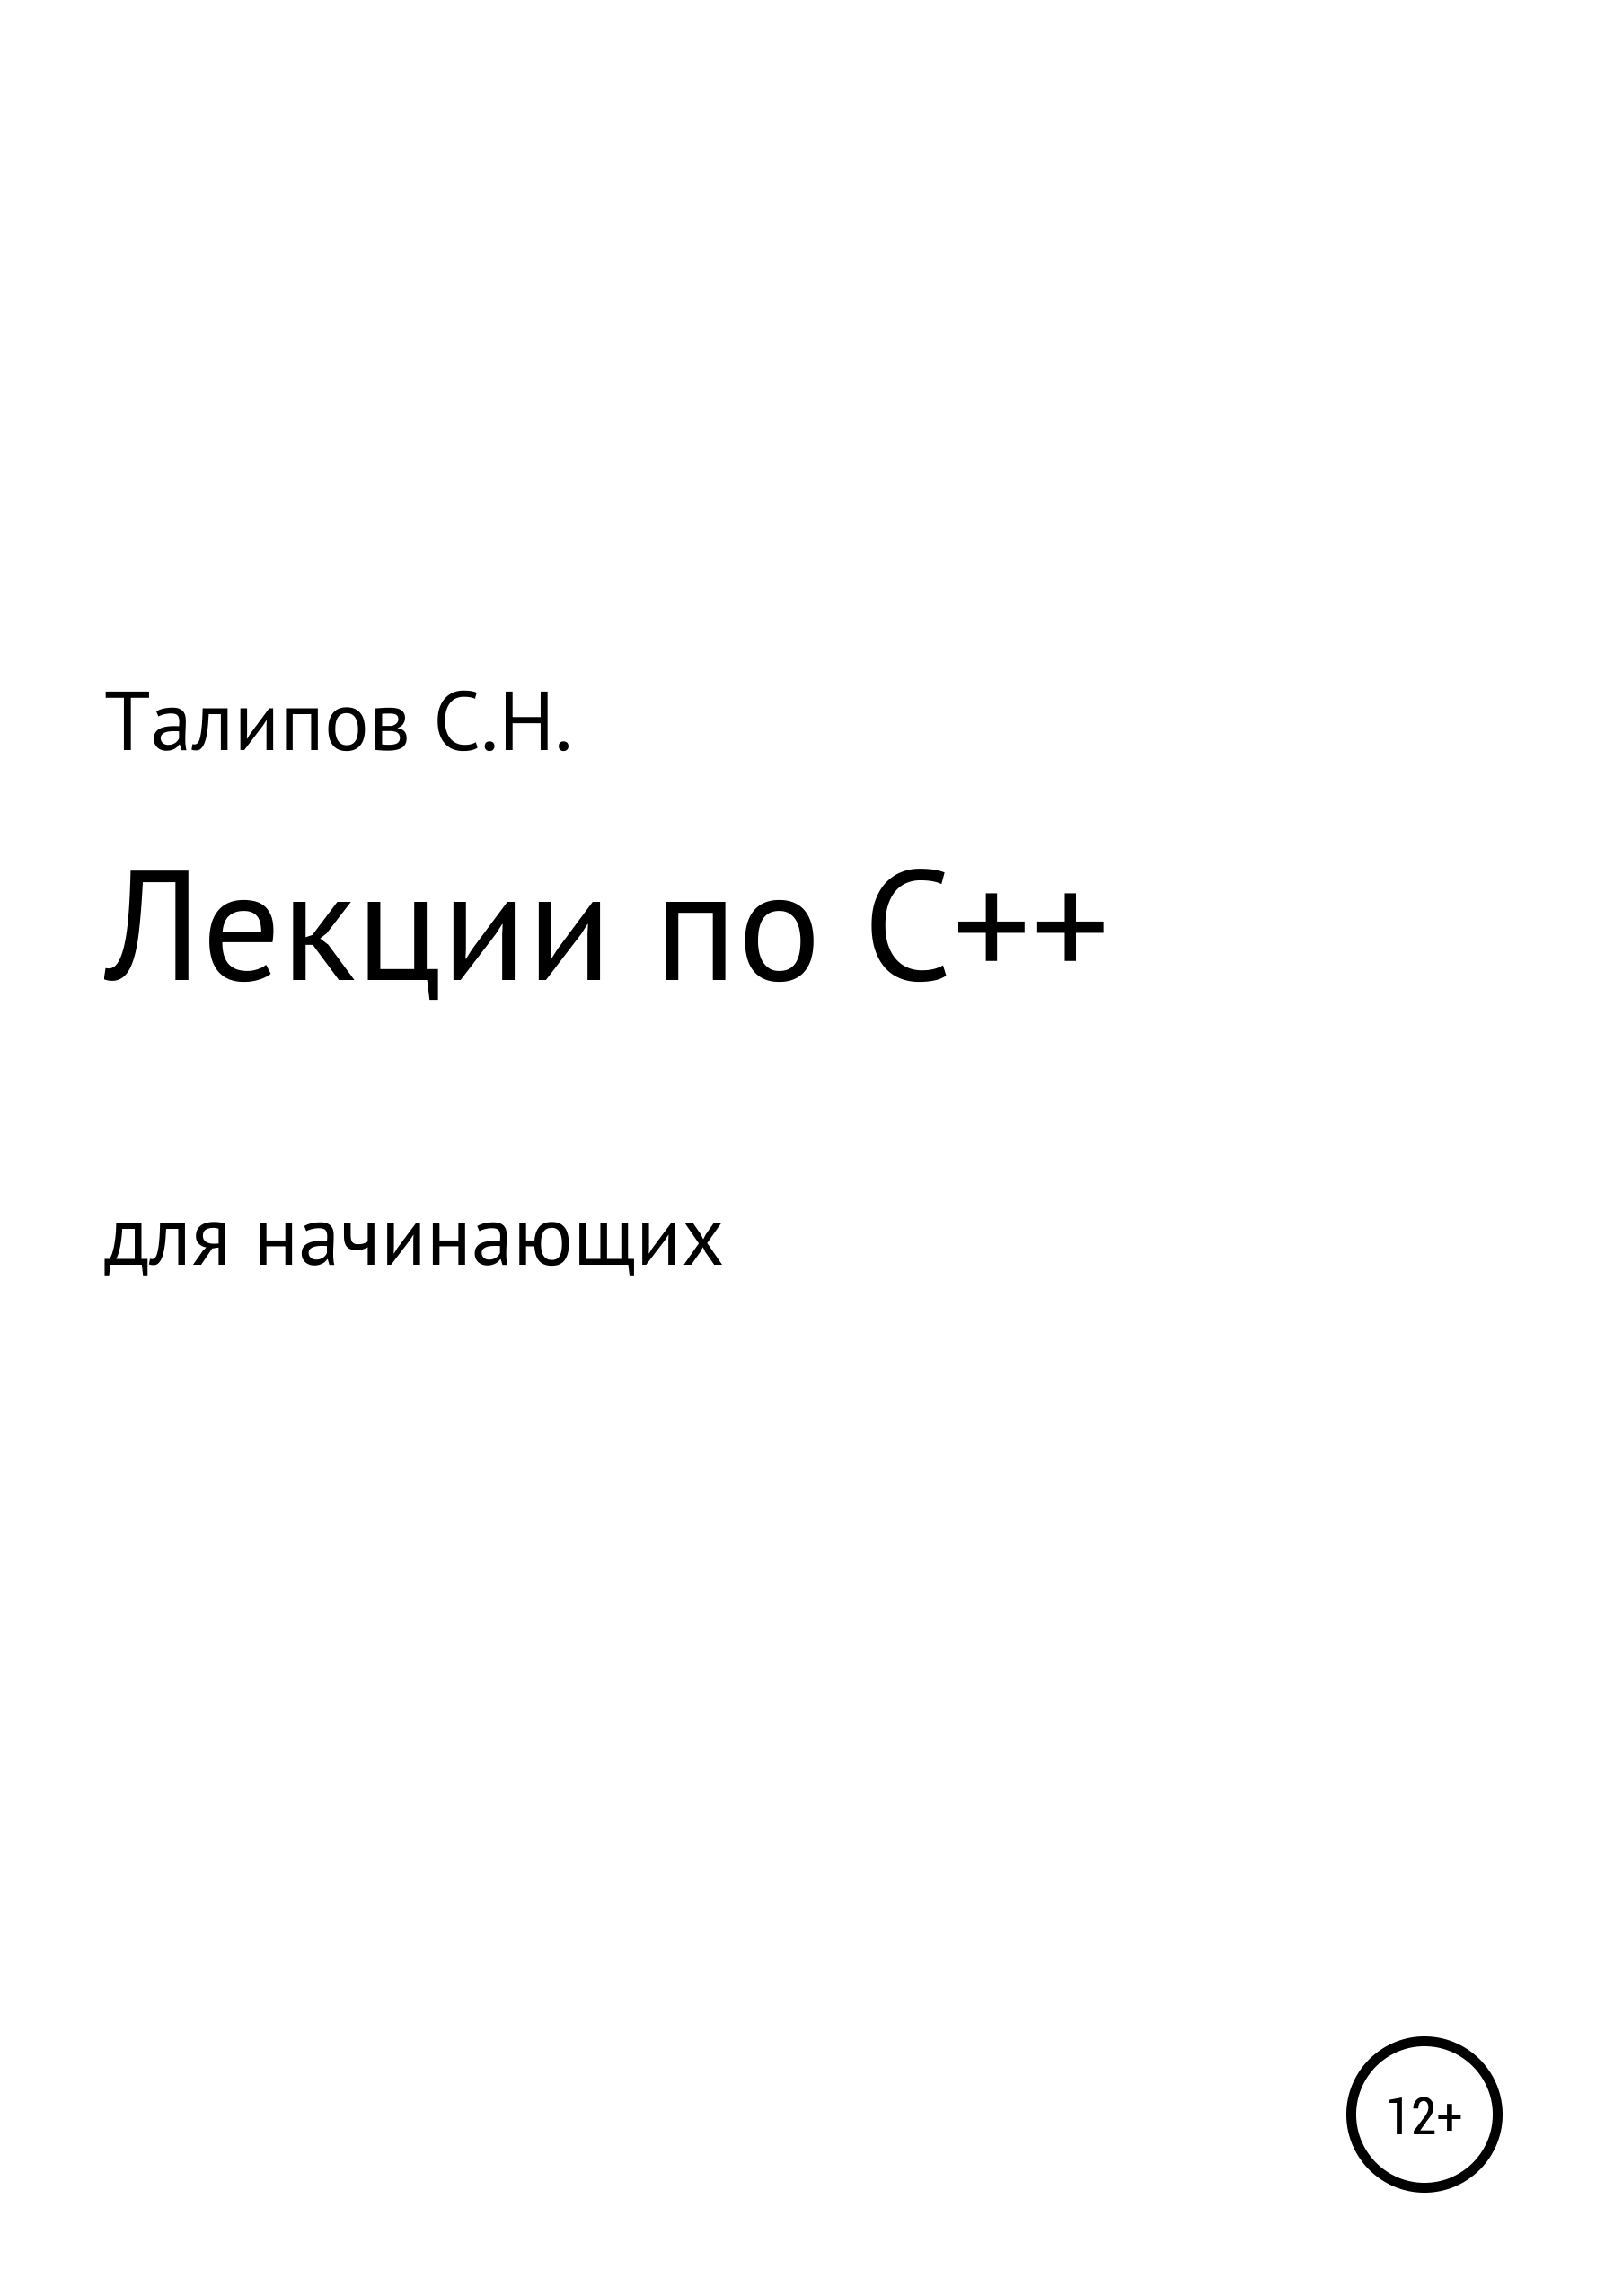 Книга  Лекции по C++ для начинающих созданная Сергей Николаевич Талипов может относится к жанру программирование. Стоимость электронной книги Лекции по C++ для начинающих с идентификатором 65450676 составляет 149.00 руб.